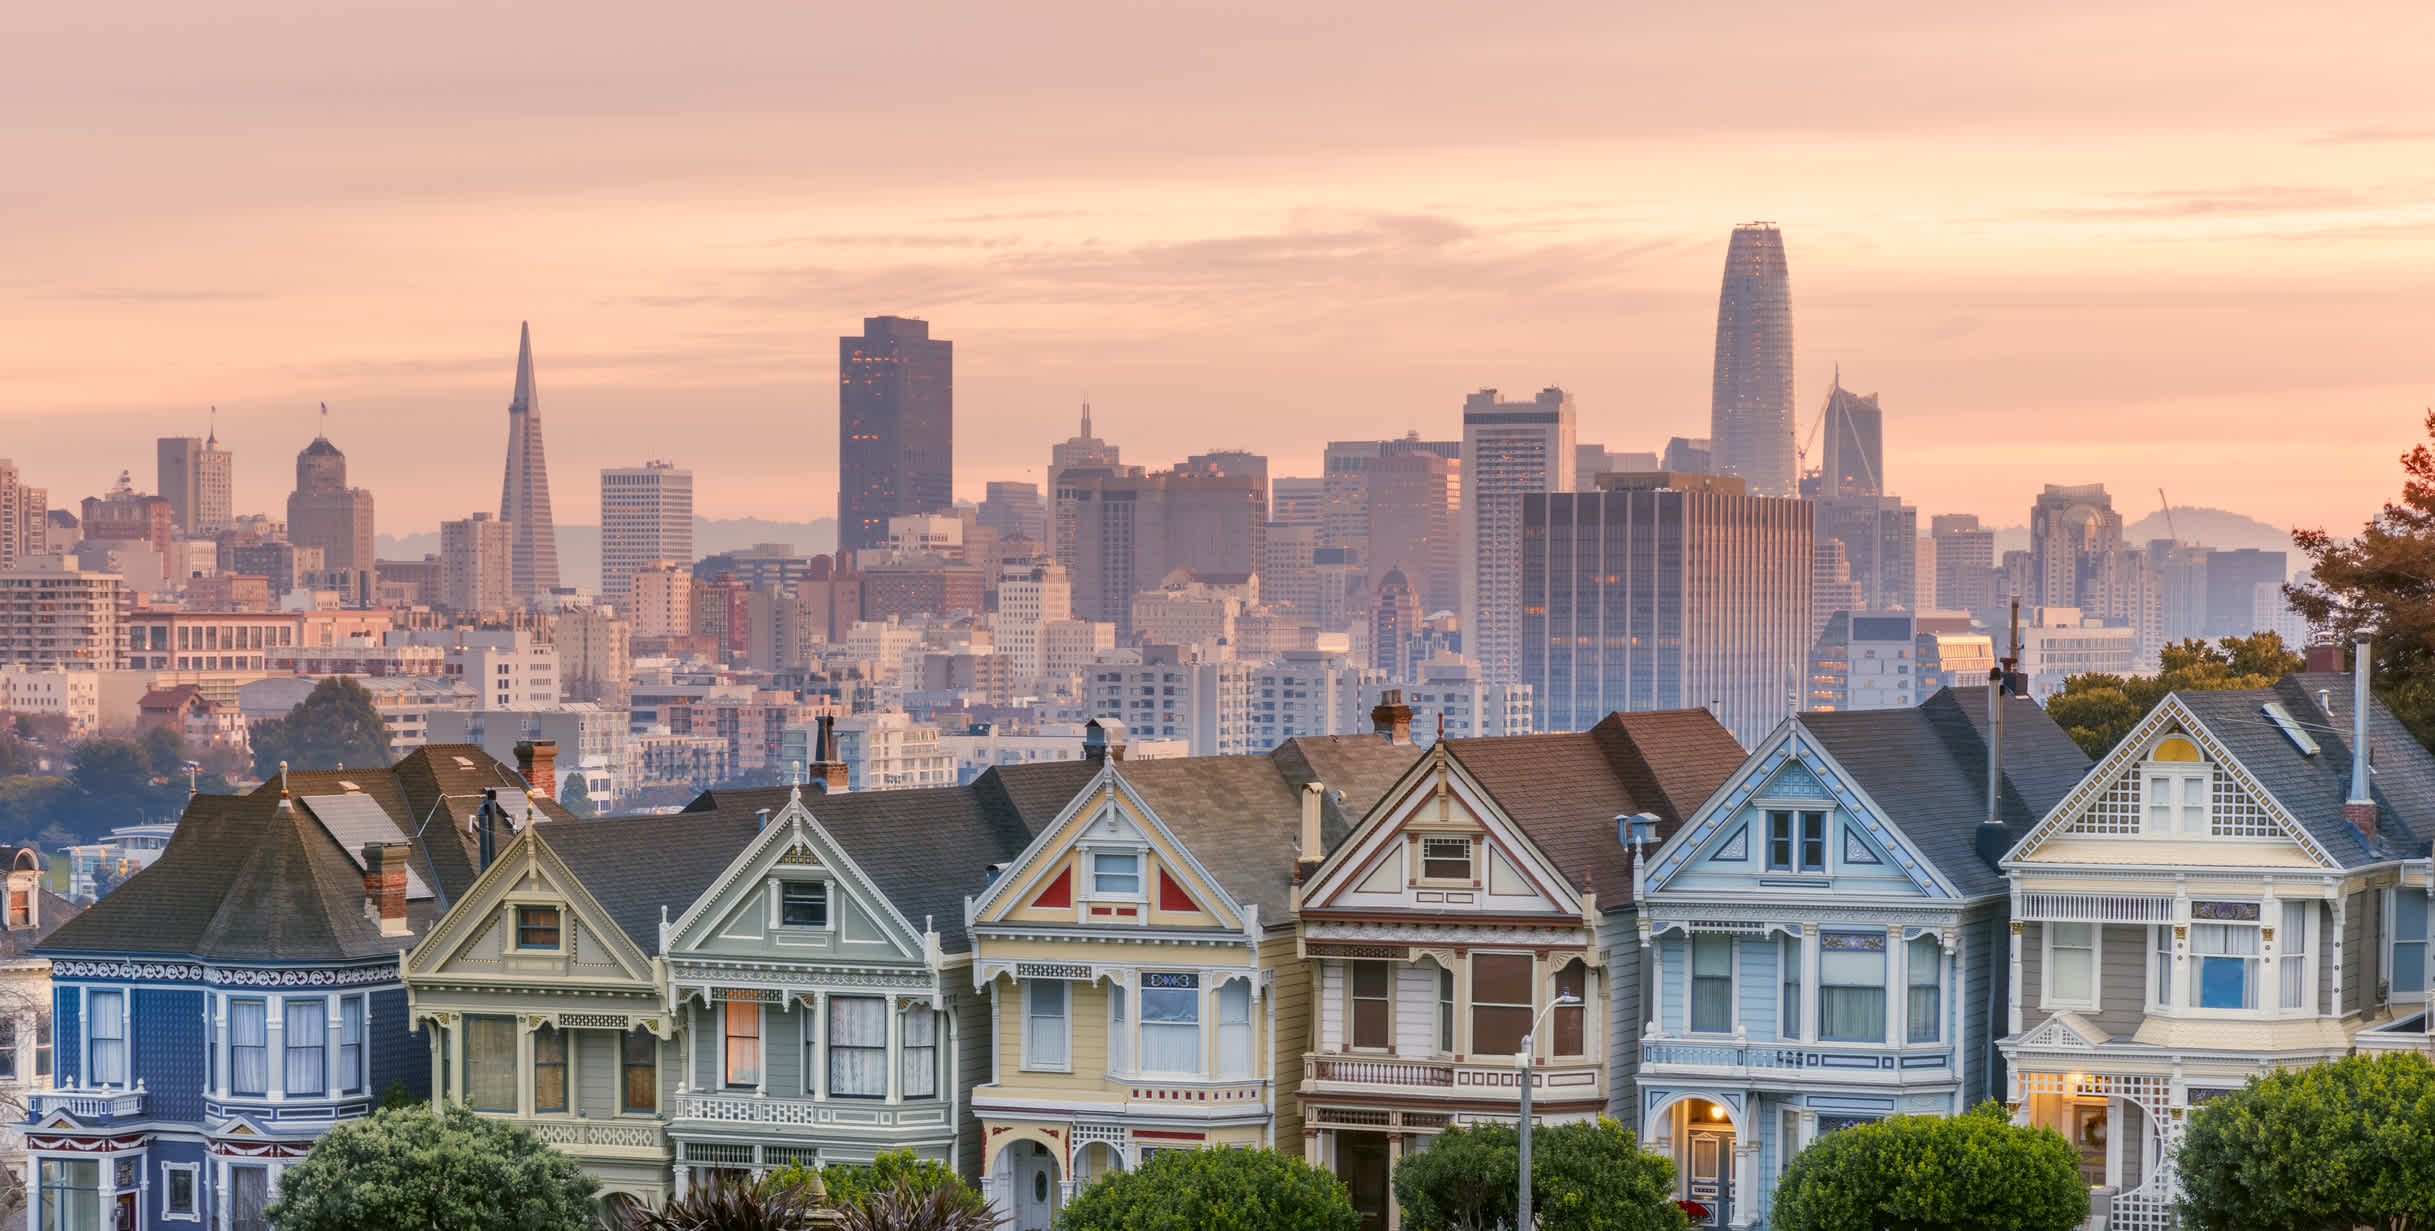 La ligne d'horizon de San Francisco avec ses maisons colorées et ses rues escarpées.